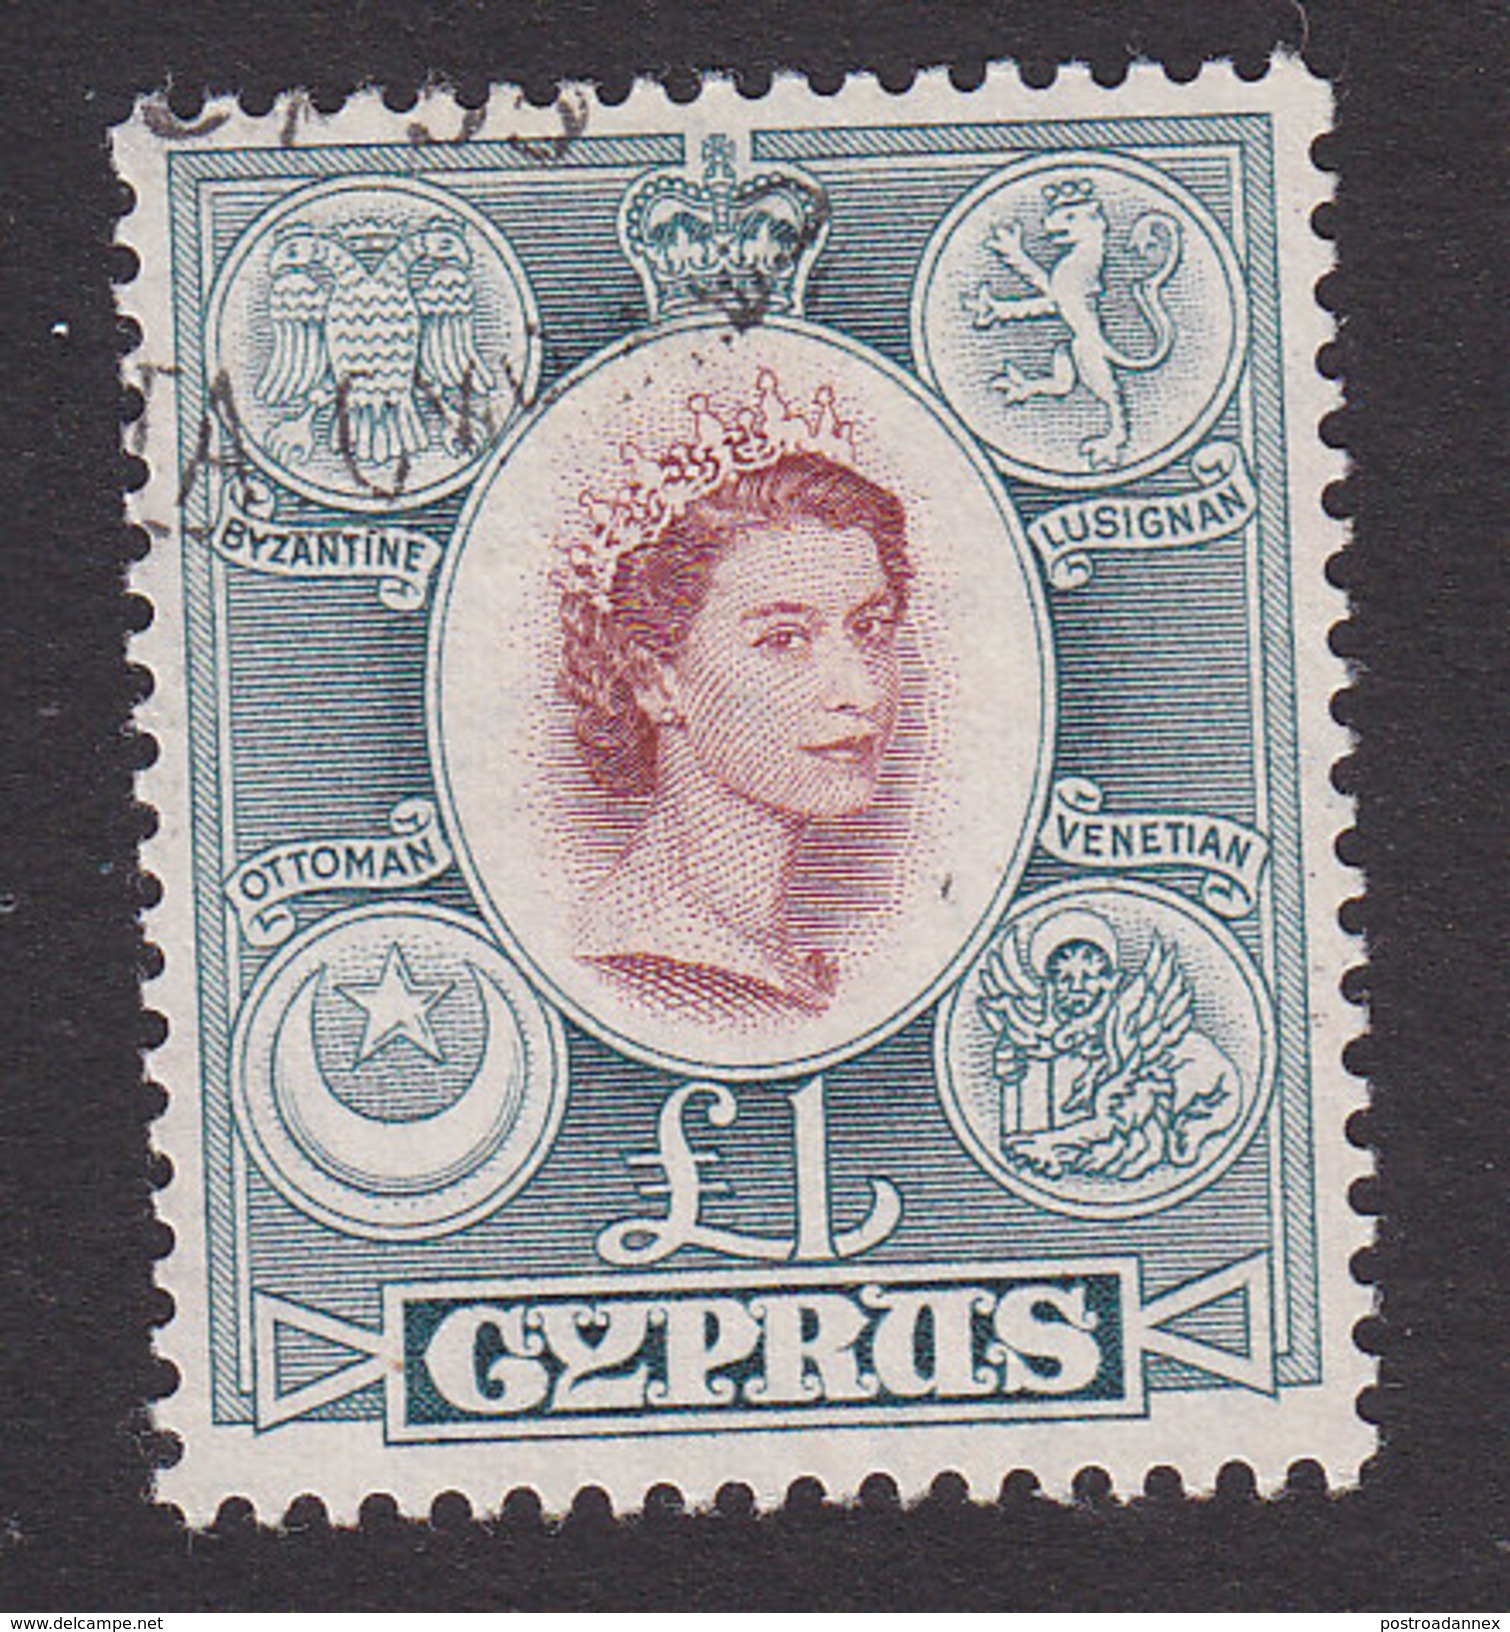 Cyprus, Scott #182, Used, Elizabeth, Issued 1955 - Cyprus (...-1960)